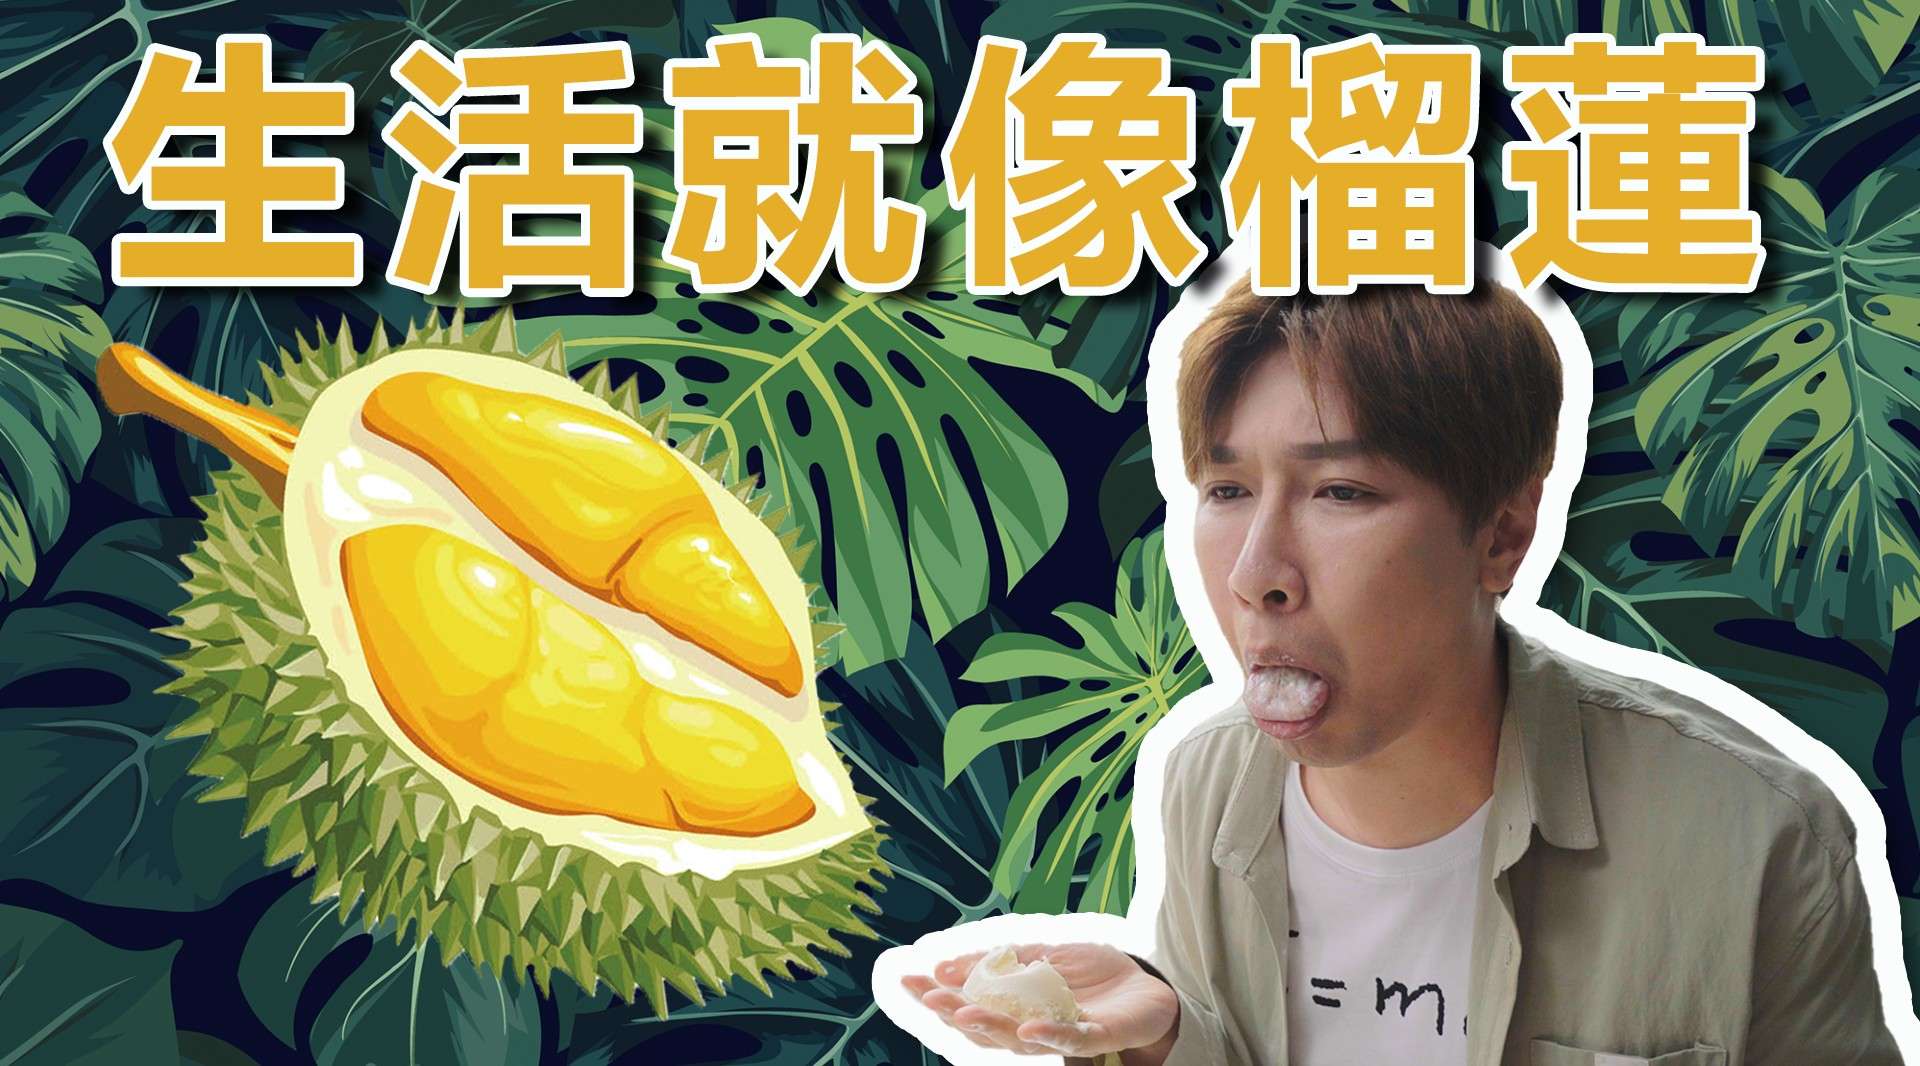 生活就像榴莲Life is like a durian.